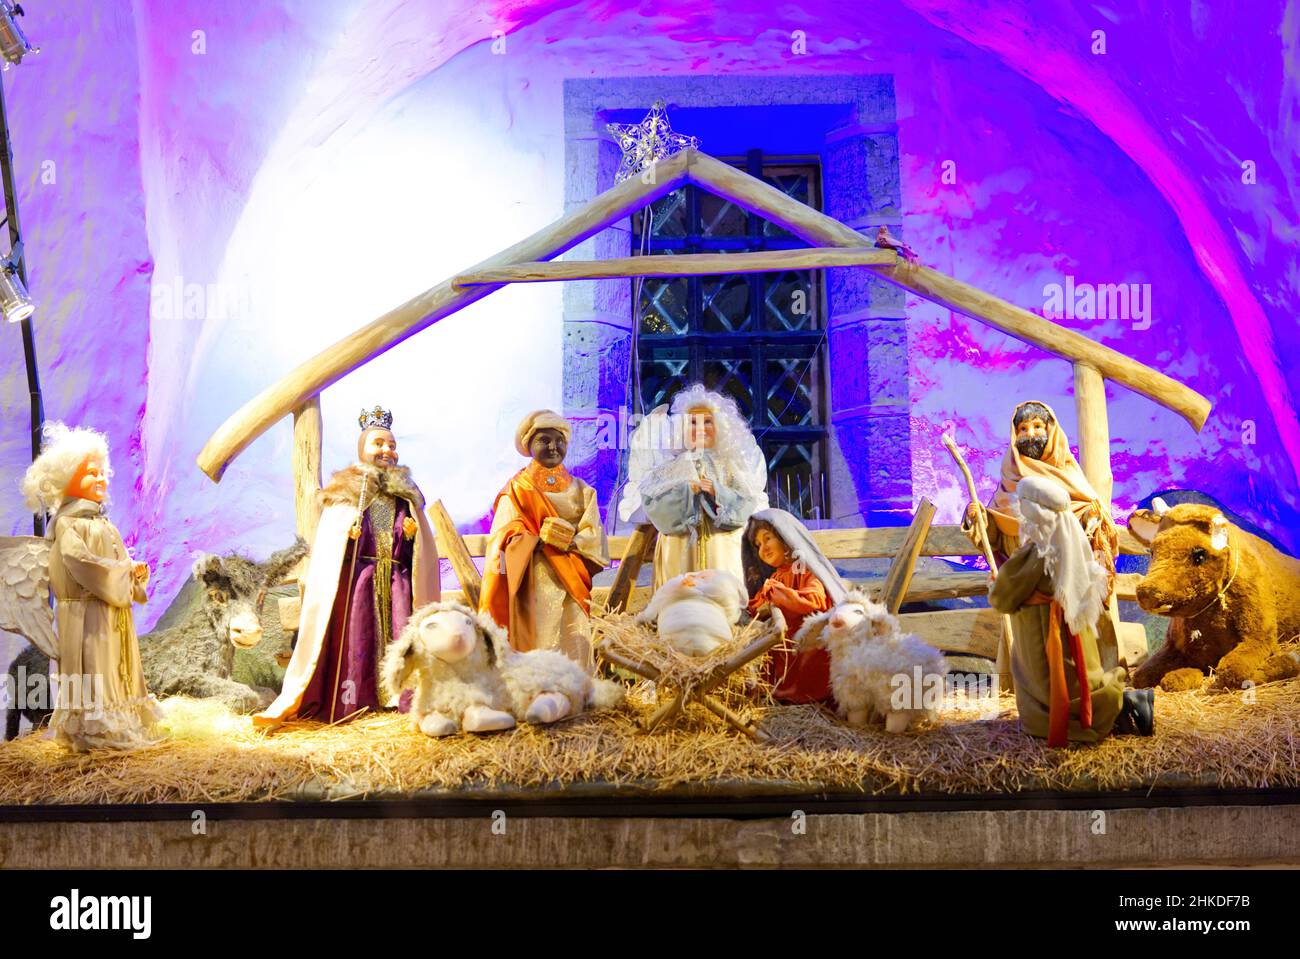 La naissance de la scène Crist de Jésus.La Sainte famille et Jésus dans le jardin. Banque D'Images